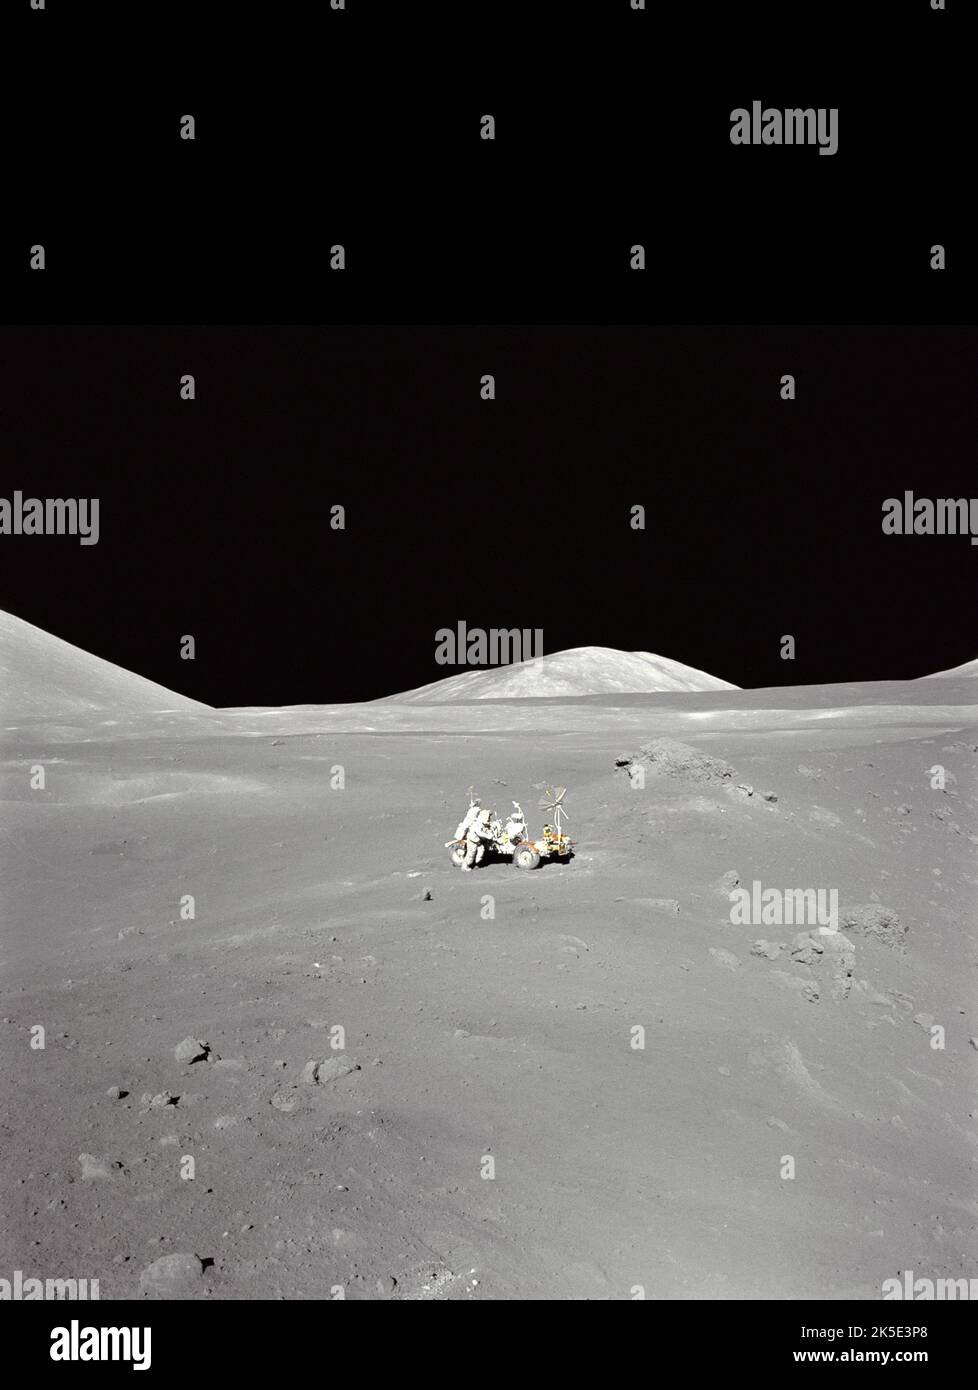 Apollo 17 Mondlandung. Ein Mondpanorama auf der Geologiestation 4, dem Shorty Crater, dem Mond, wurde fotografiert, als der Geologe und Astronaut Harrison Schmitt die Oberfläche mit dem Lunar Roving Vehicle erforschte, das vom Marshall Space Flight Center der NASA entwickelt wurde. In diesem Gebiet entdeckte Schmitt ungewöhnliche orangefarbene Böden. Da Apollo 17 die letzte der Apollo-Missionen war, wurde Schmitt die zwölfte Person, die den Mond betrat. Ein einzigartiges, optimiertes NASA-Bild (mit zusätzlichem schwarzen vertikalen Raum über dem ursprünglichen quadratischen Bild; Fadenkreuz-Entfernung): Quelle: NASA Stockfoto